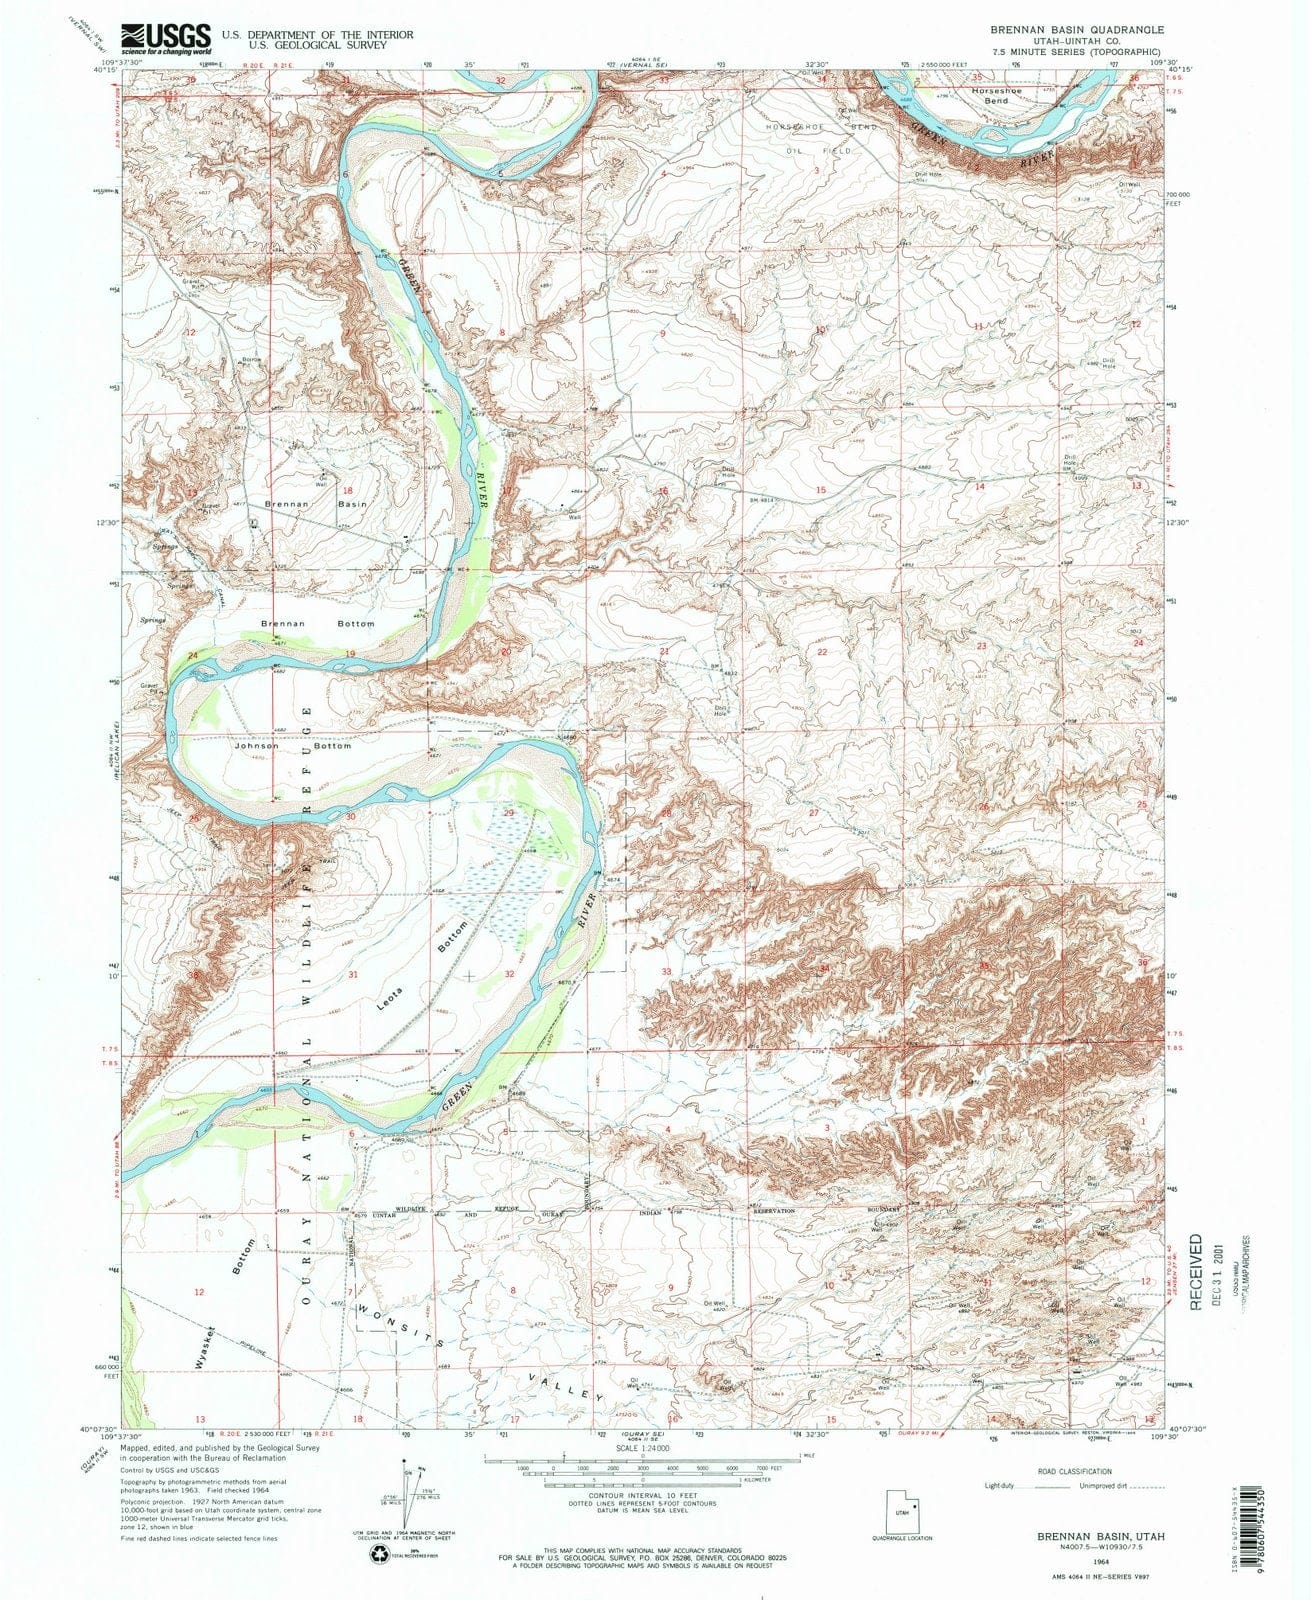 1964 Brennan Basin, UT - Utah - USGS Topographic Map